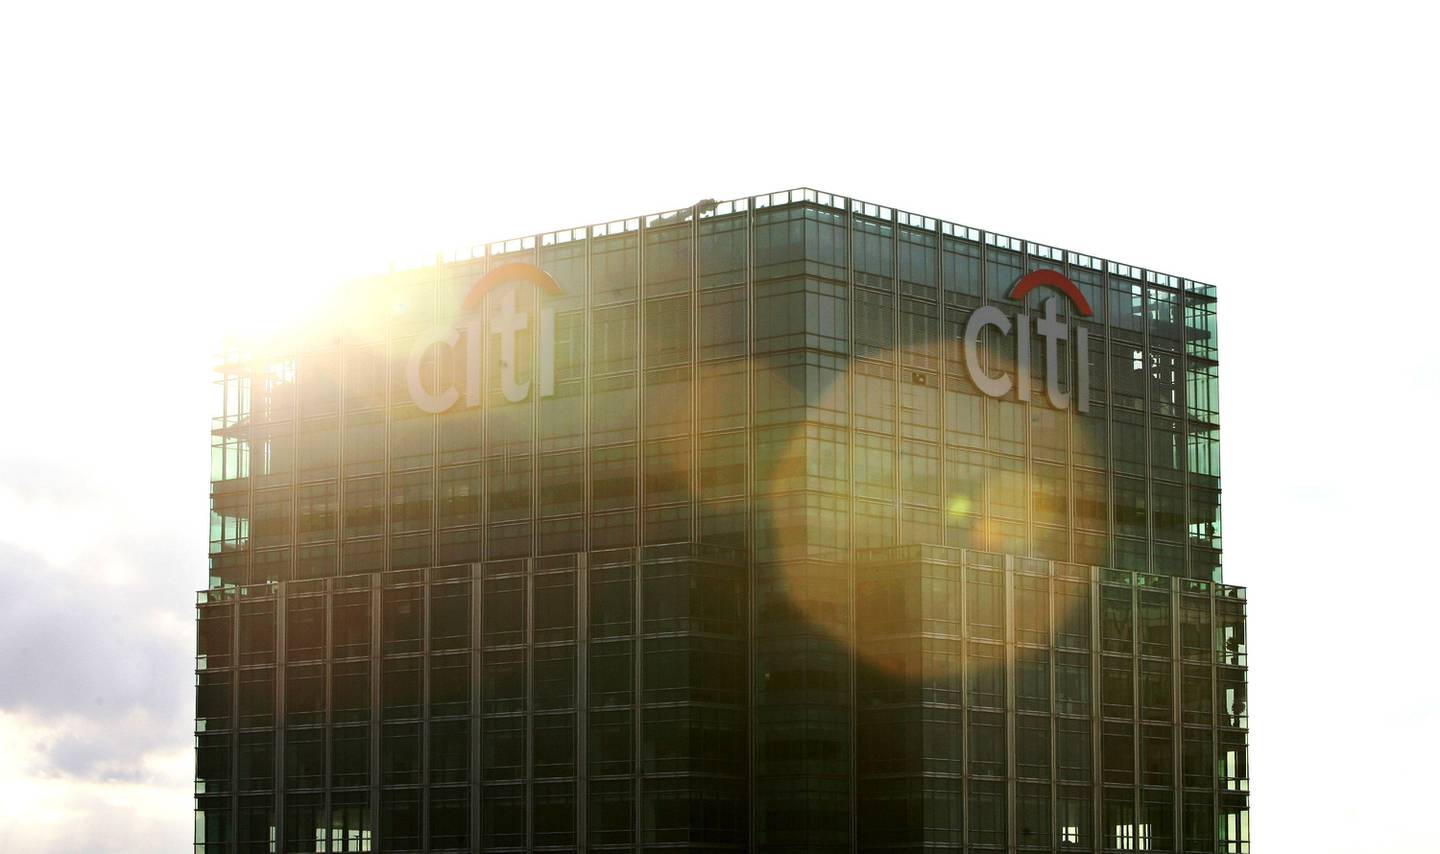 Citi anunció ayer sus intenciones de deshacerse de su negocio de banca minorista en México